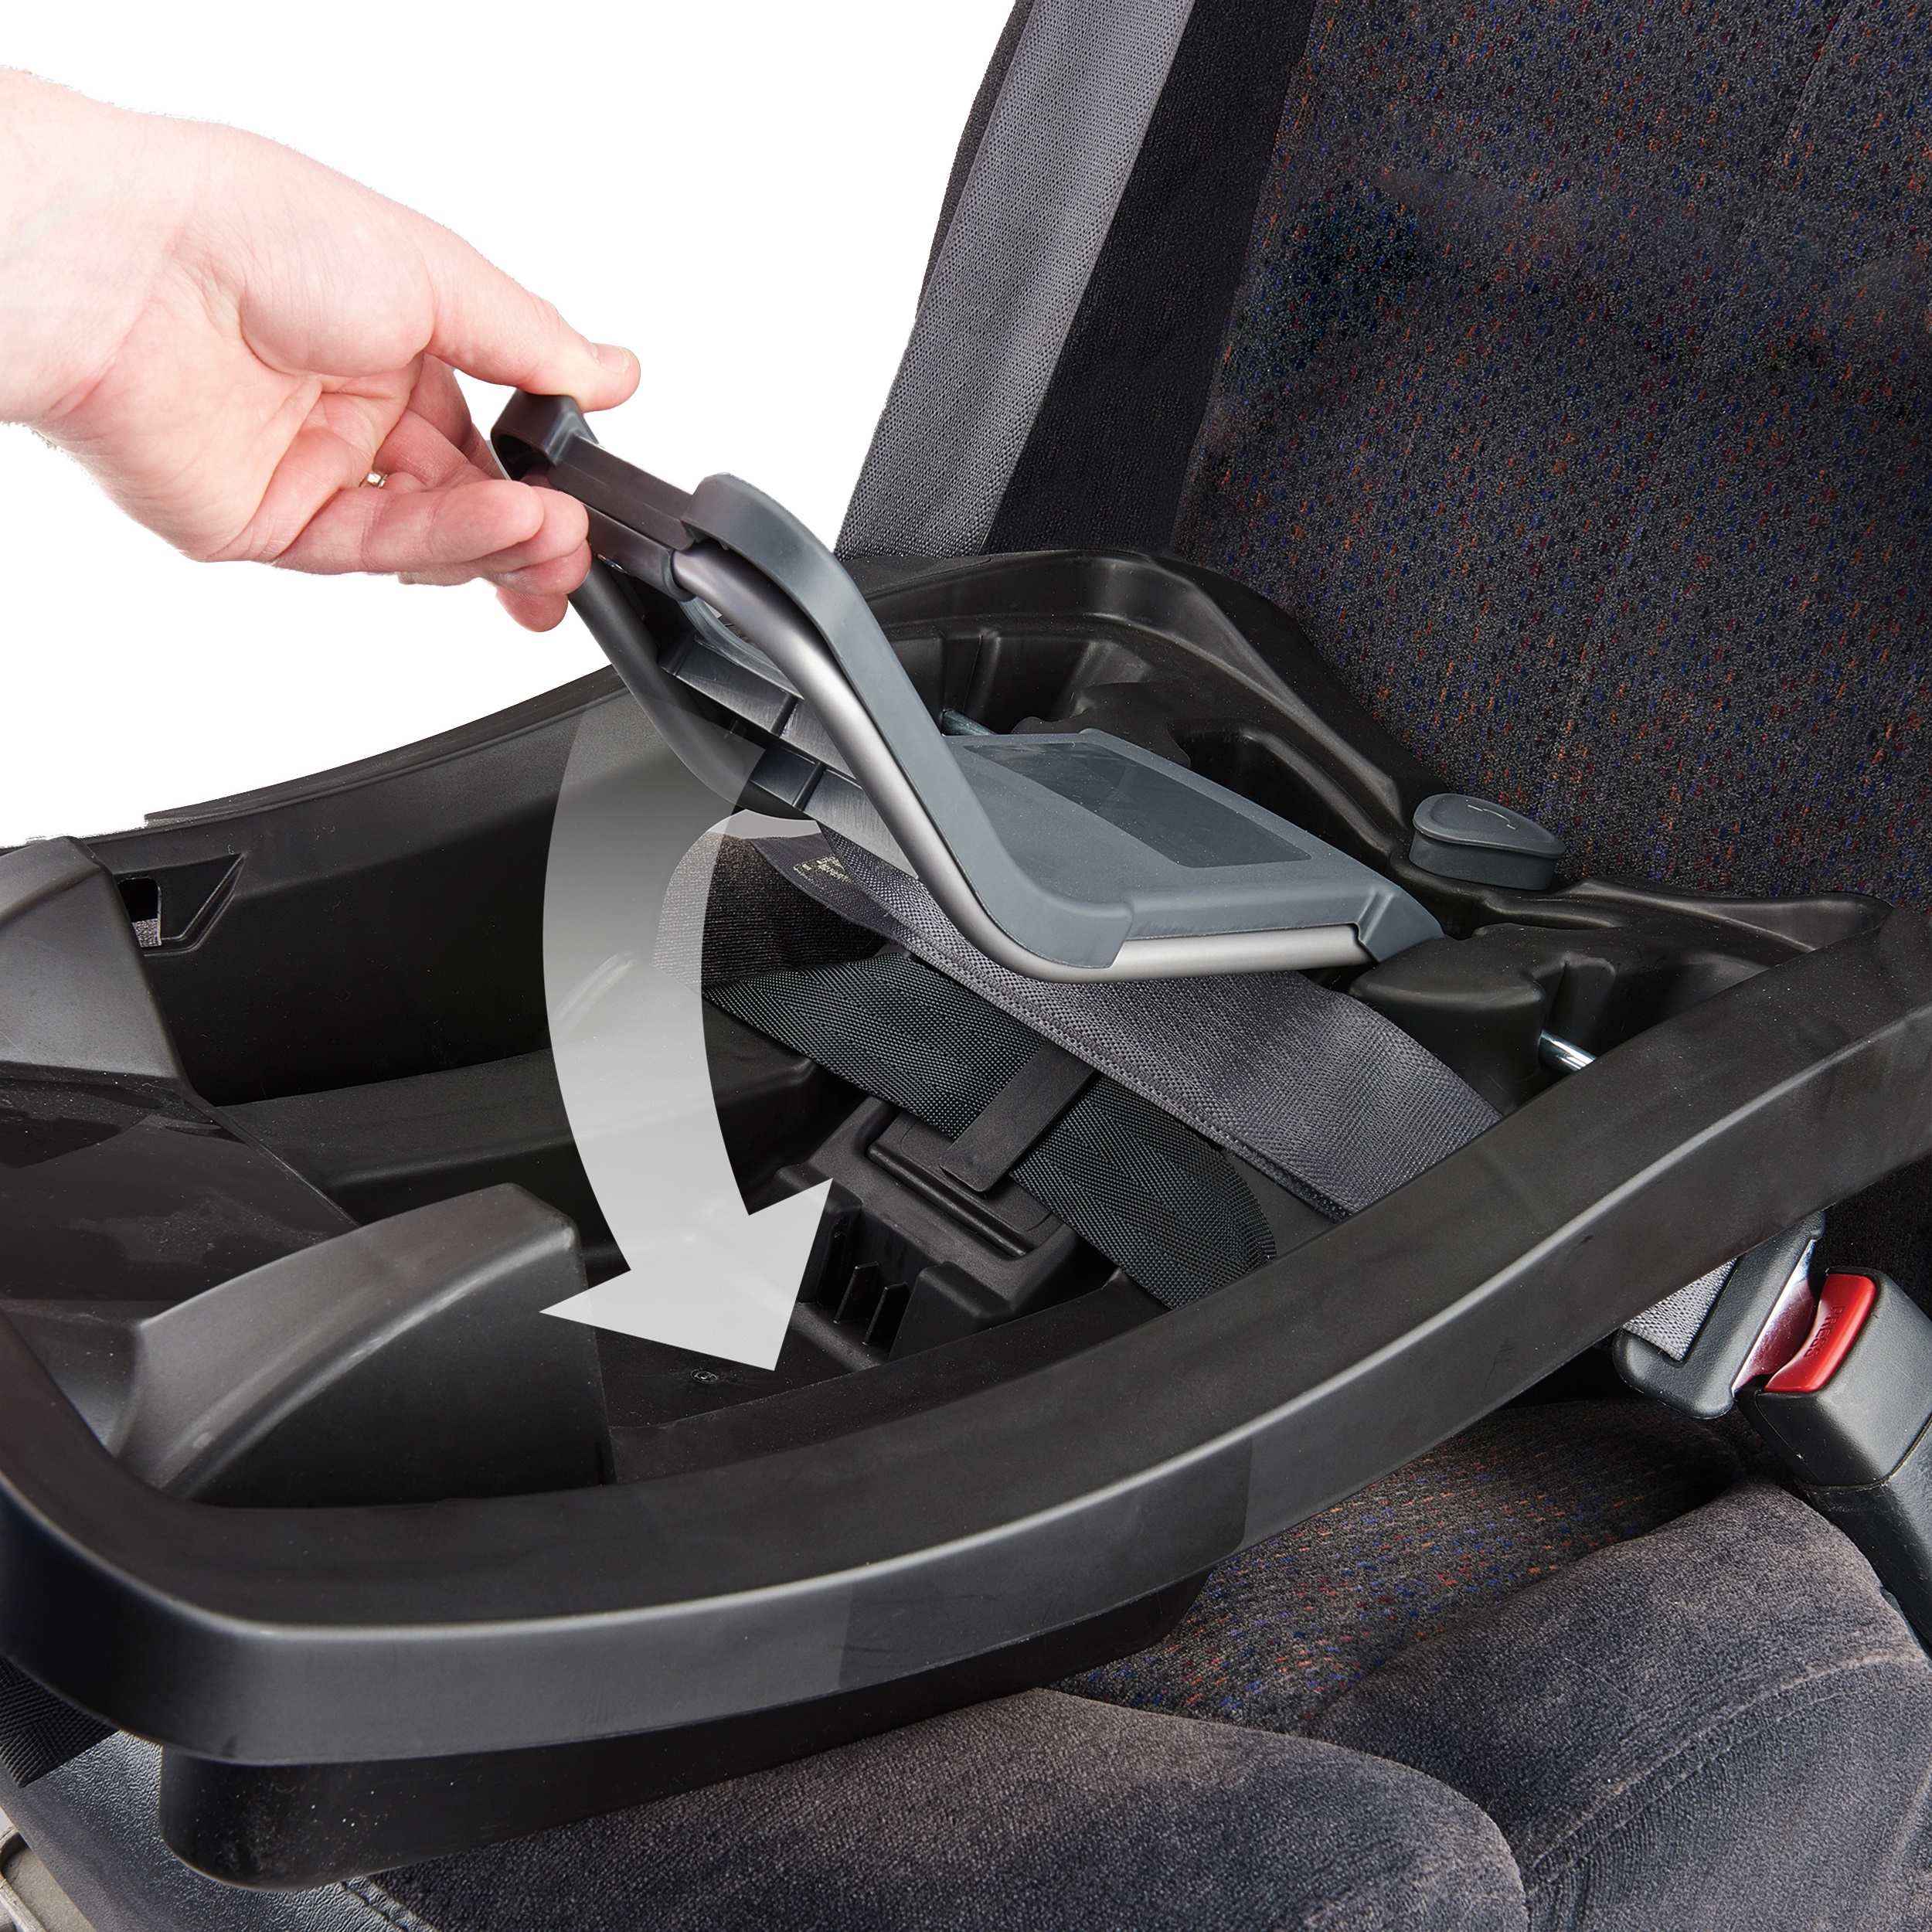 Evenflo Advanced SensorSafe Epic Travel System w/ LiteMax Infant Car Seat, Jet - image 3 of 27